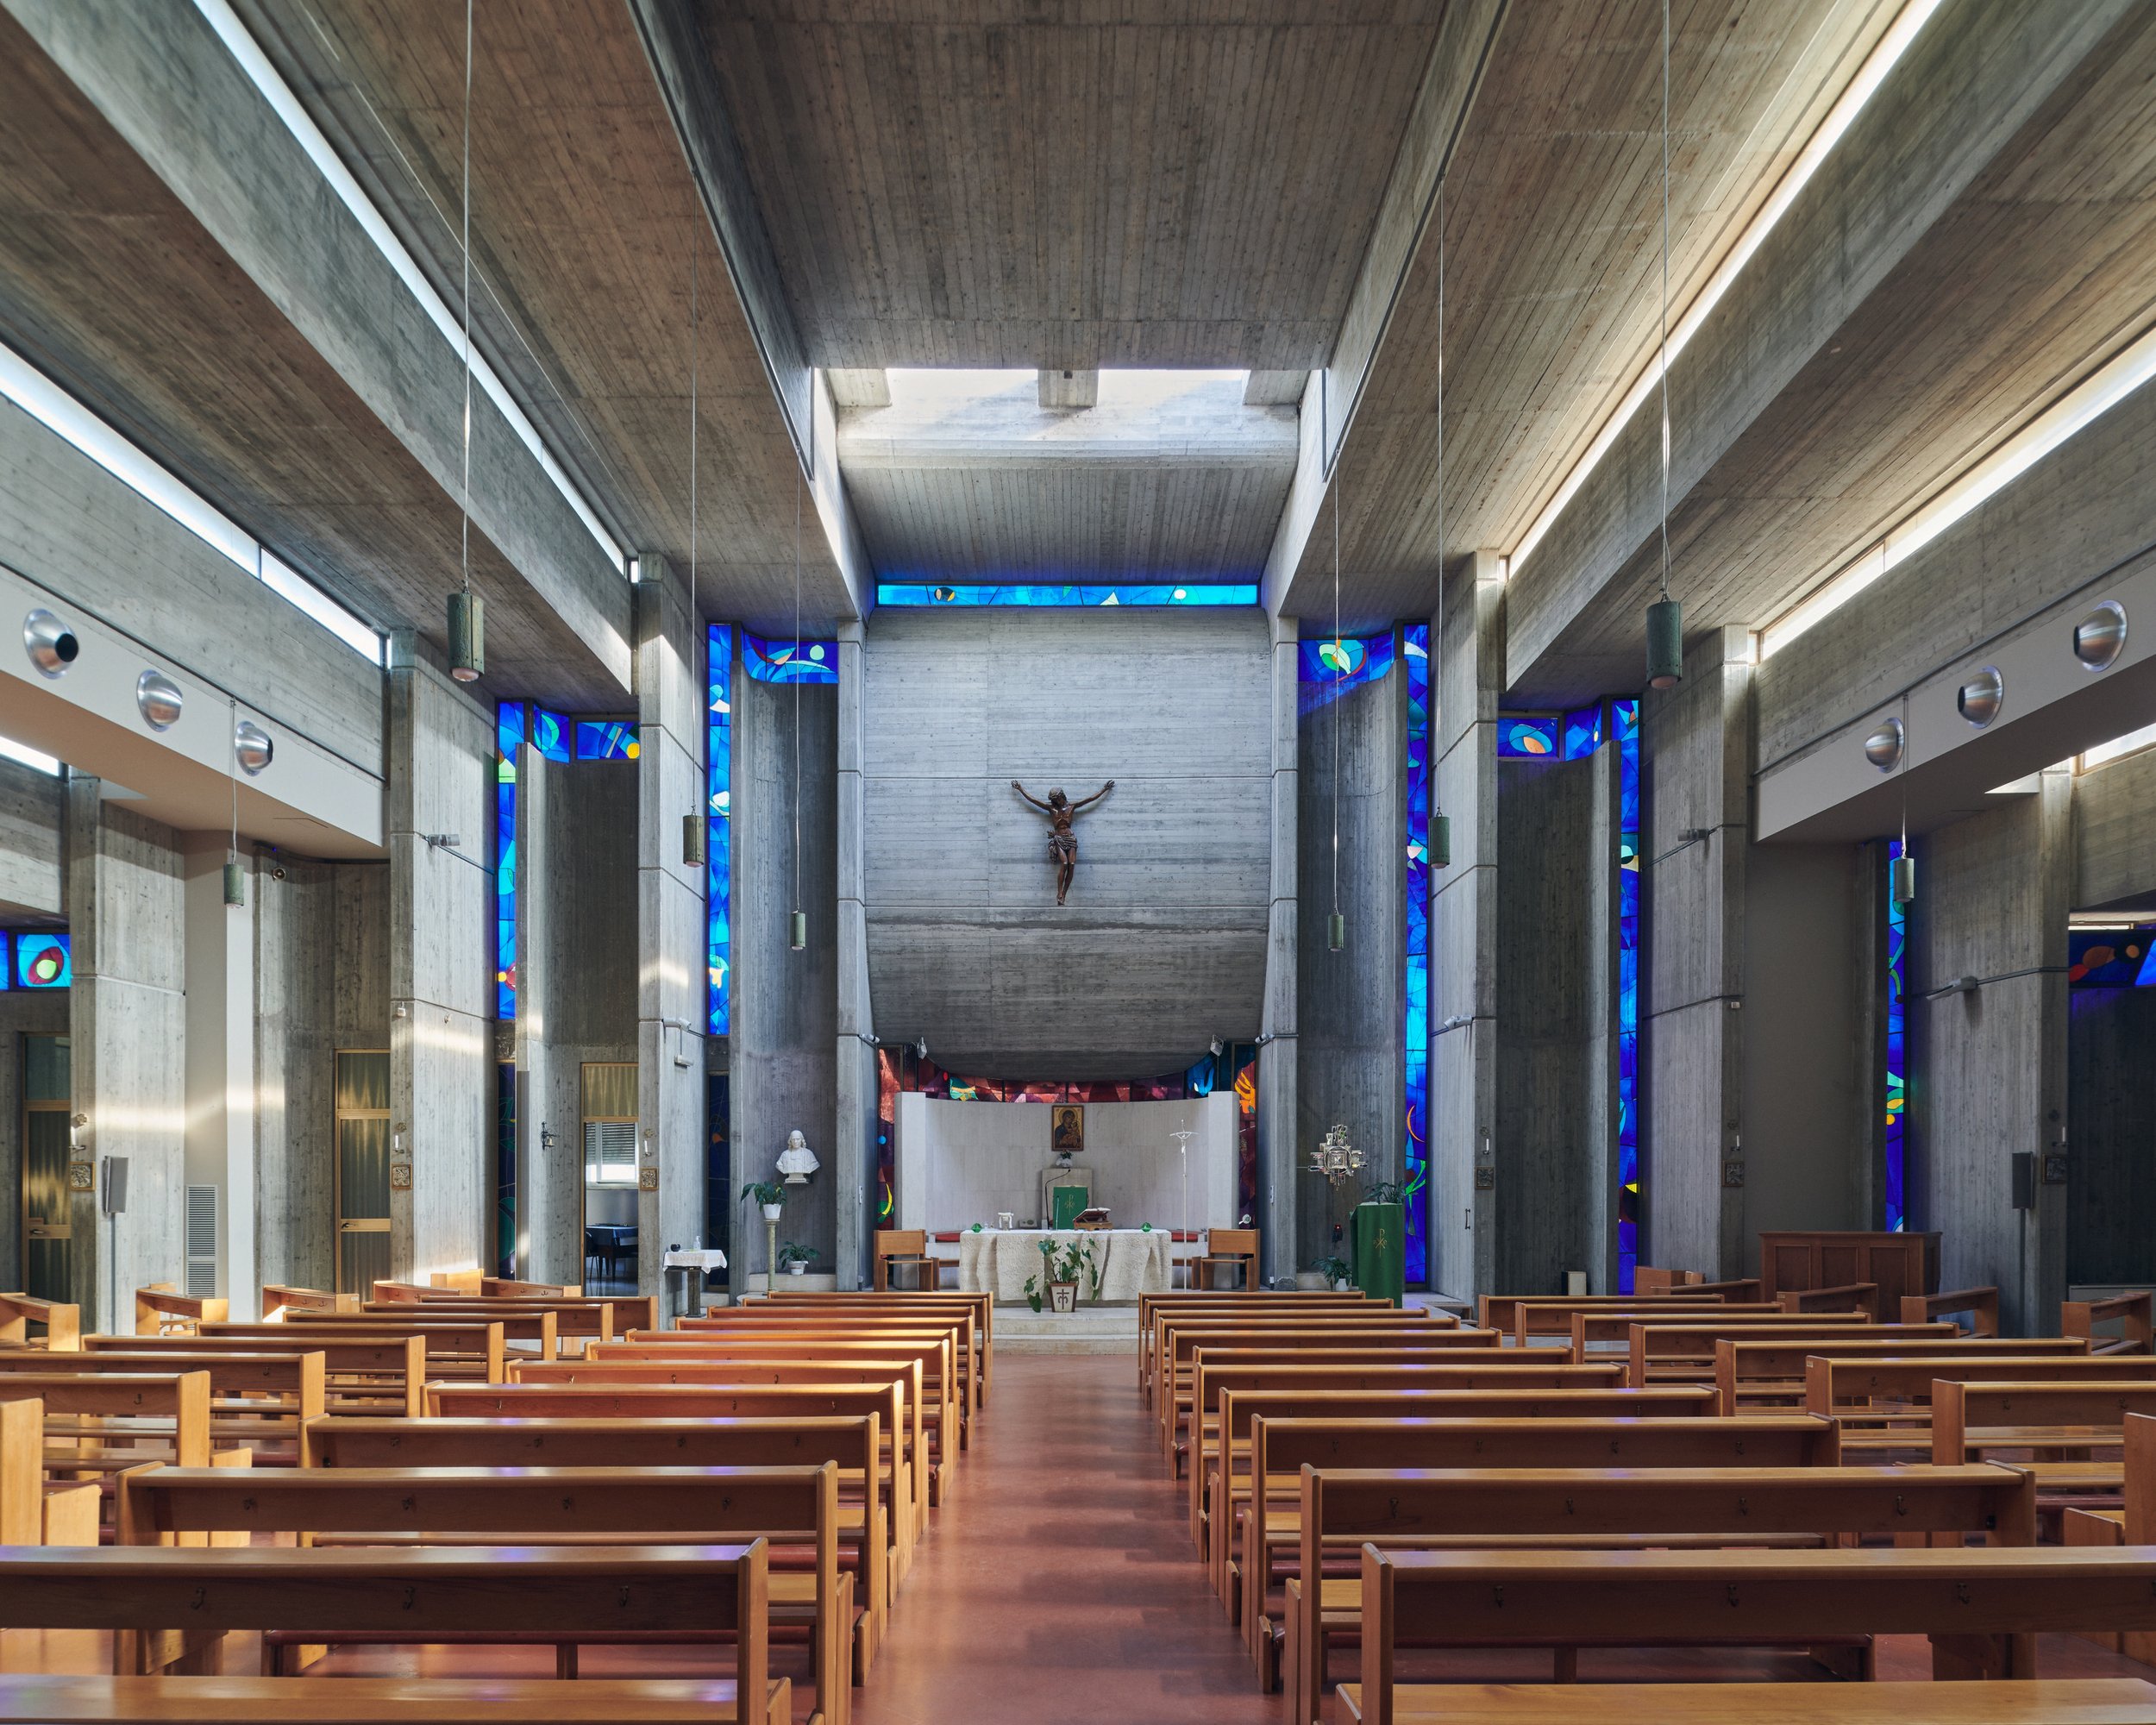 Chiesa del Santissimo Nome di Maria in Via Latina - Rome, Italy - Aldo Ortolani, 1981